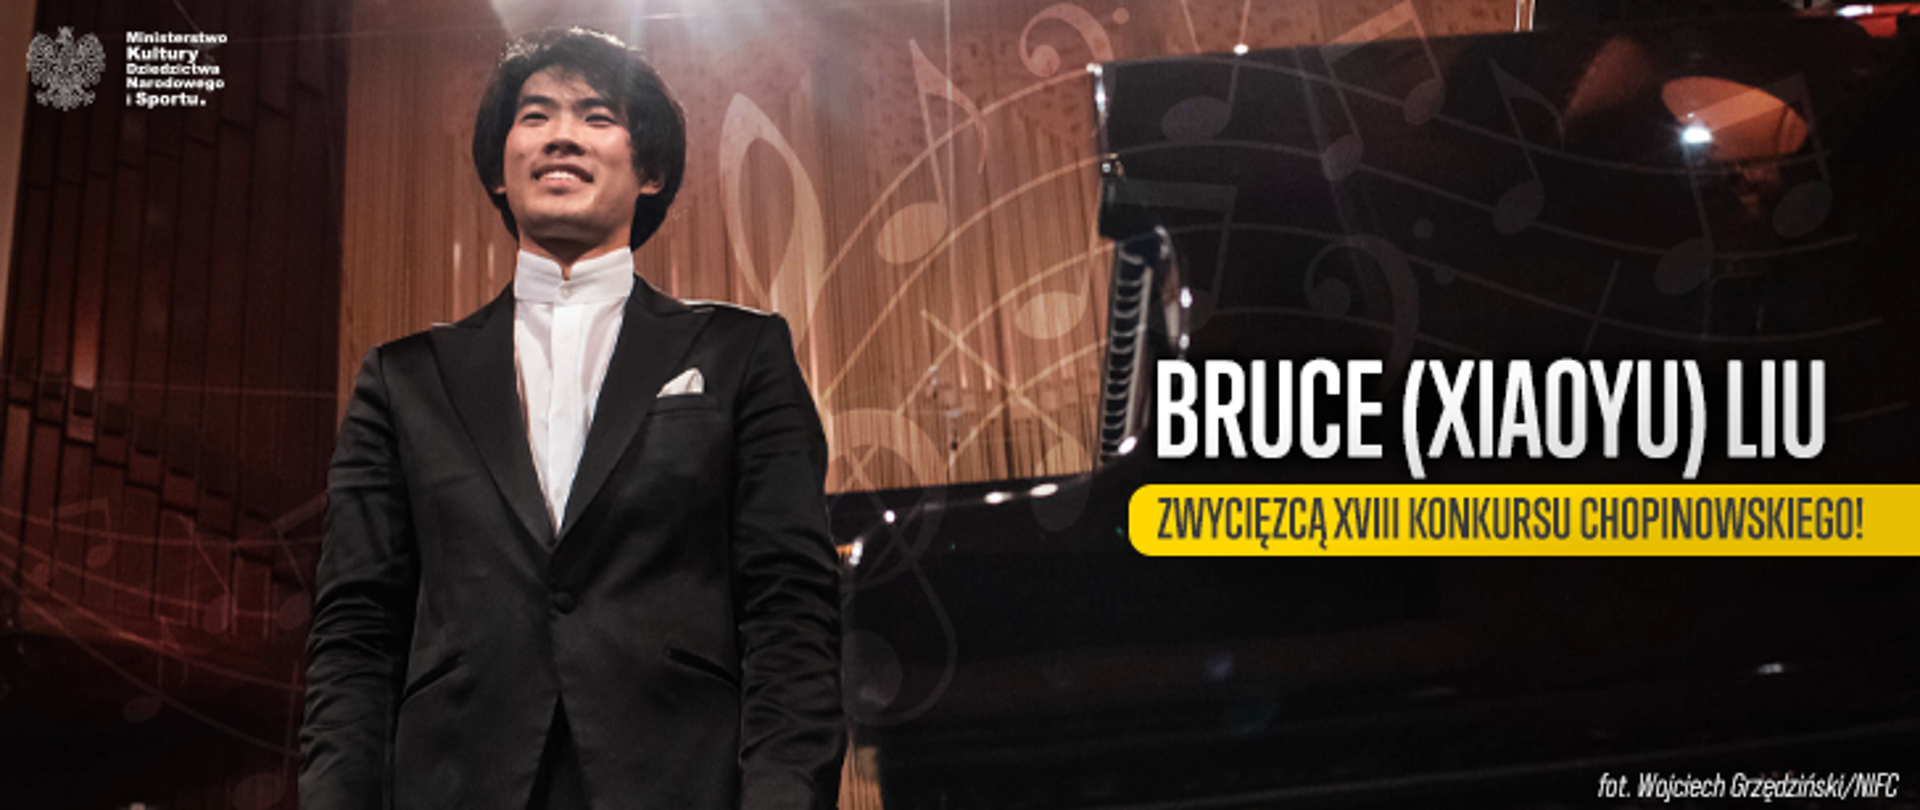 Bruce (Xiaoyu) Liu z Kanady zwycięzcą XVIII Konkursu Chopinowskiego!, fot. Wojciech Grzędziński/NIFC